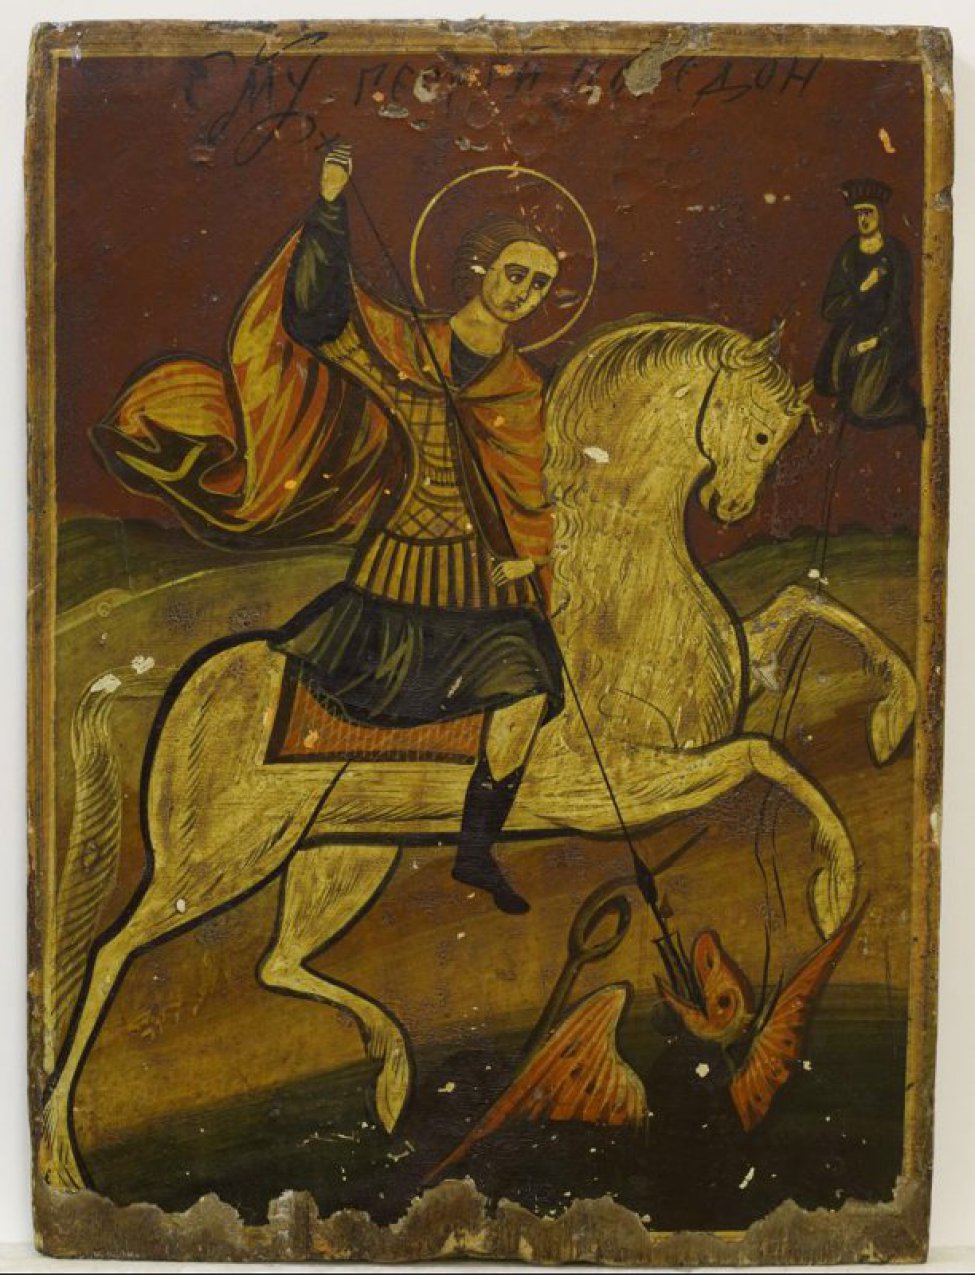 Святой изображен на белом коне, на его плечах красный развивающийся плащ. Правой рукой он поражает копьем змея, изображенного в нижнем правом углу. Справа вверху изображена коленопреклоненая царевна в темных одеждах.